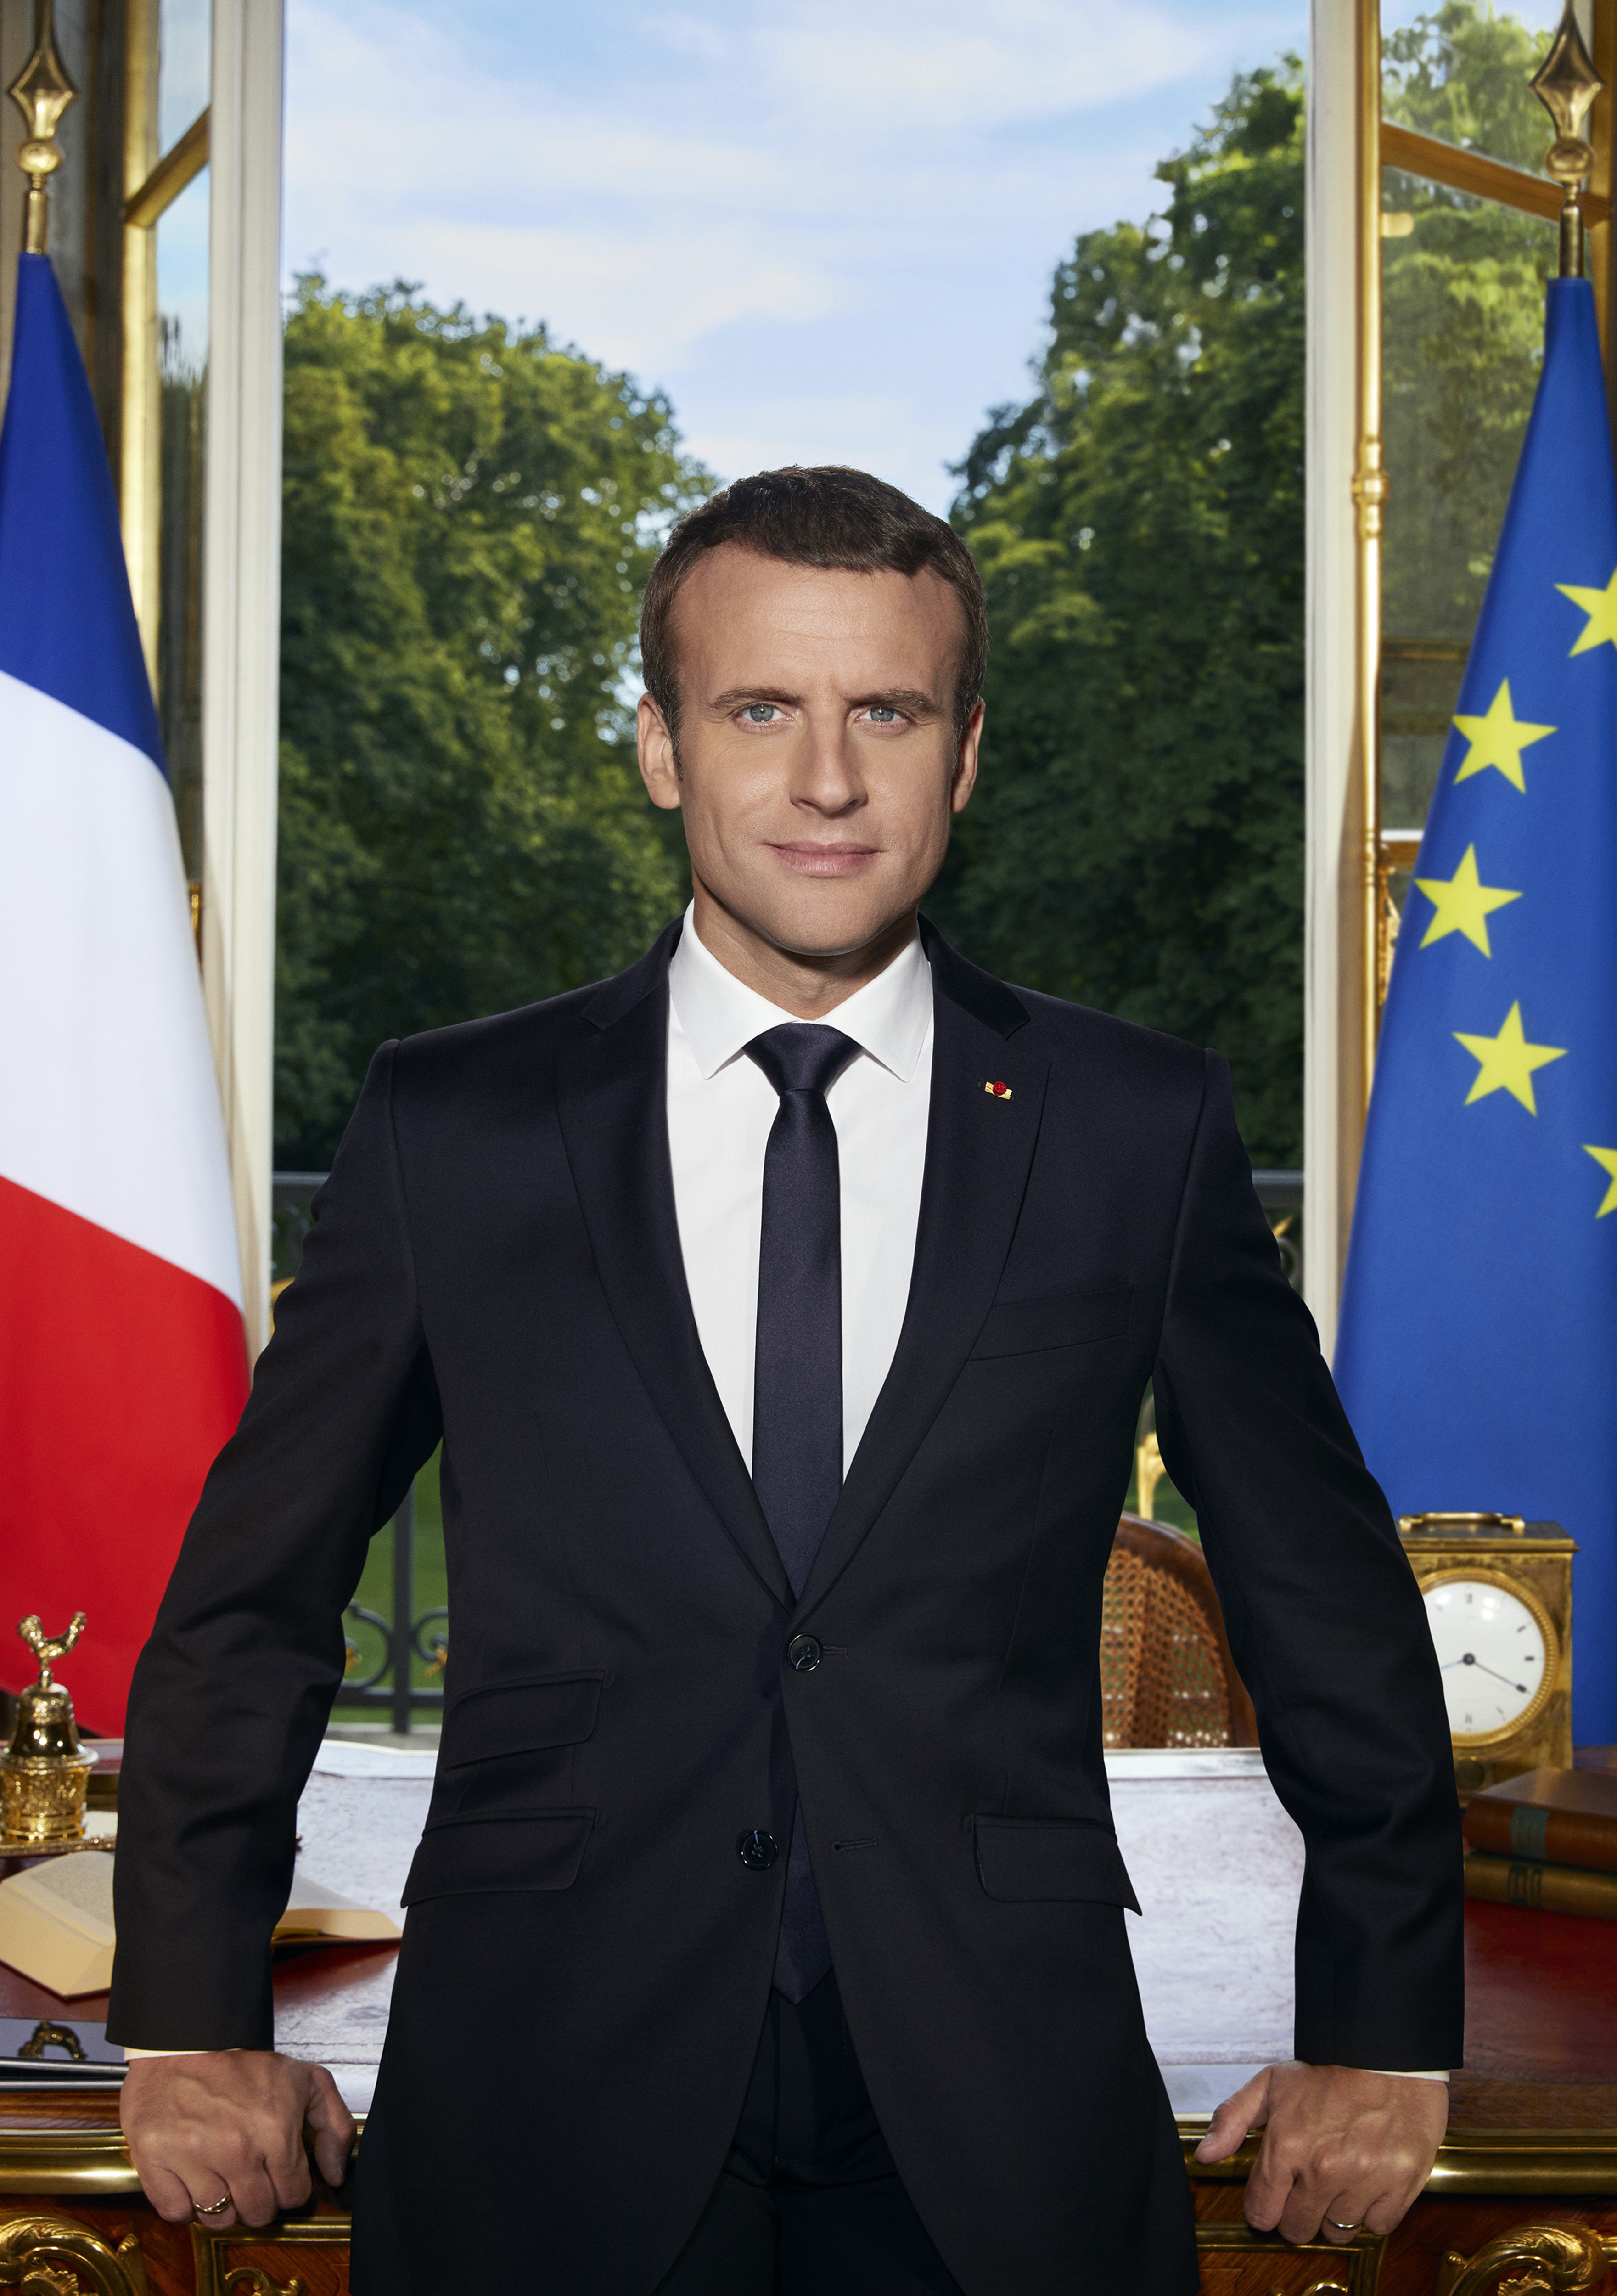 Portrait of Emmanuel Macron: Soazig de la Moissonniere / Presidency of the French Republic